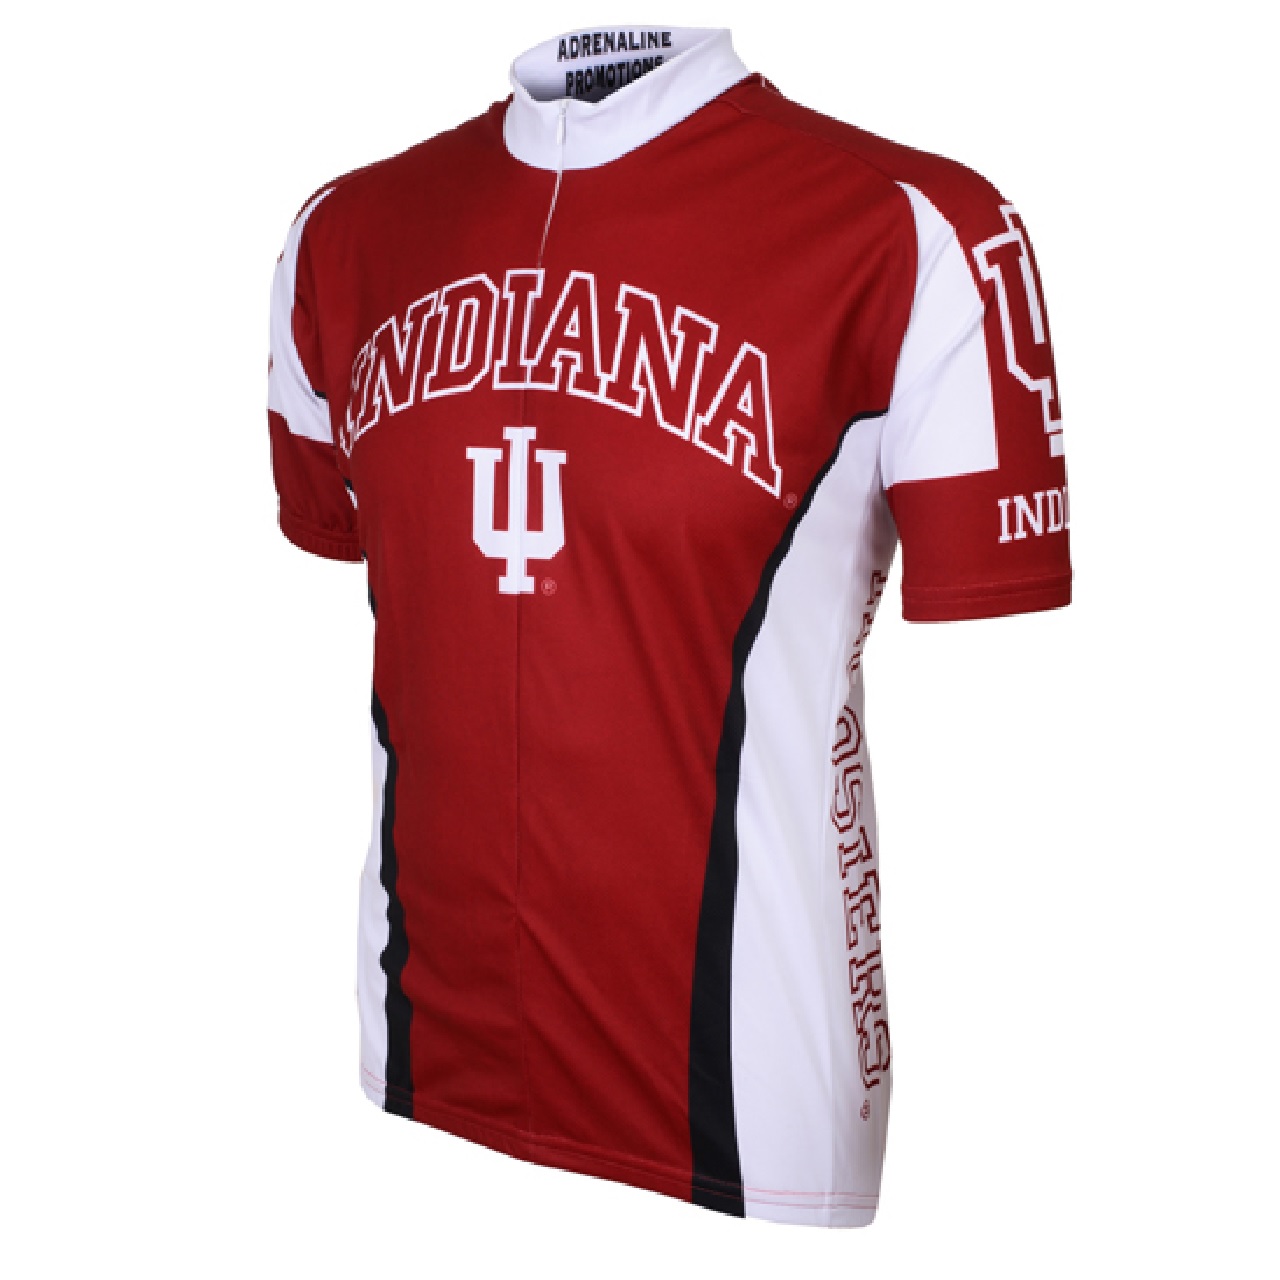 Adrenaline Promo Indiana University Hoosiers College 3/4 zip Men's Cycling Jersey